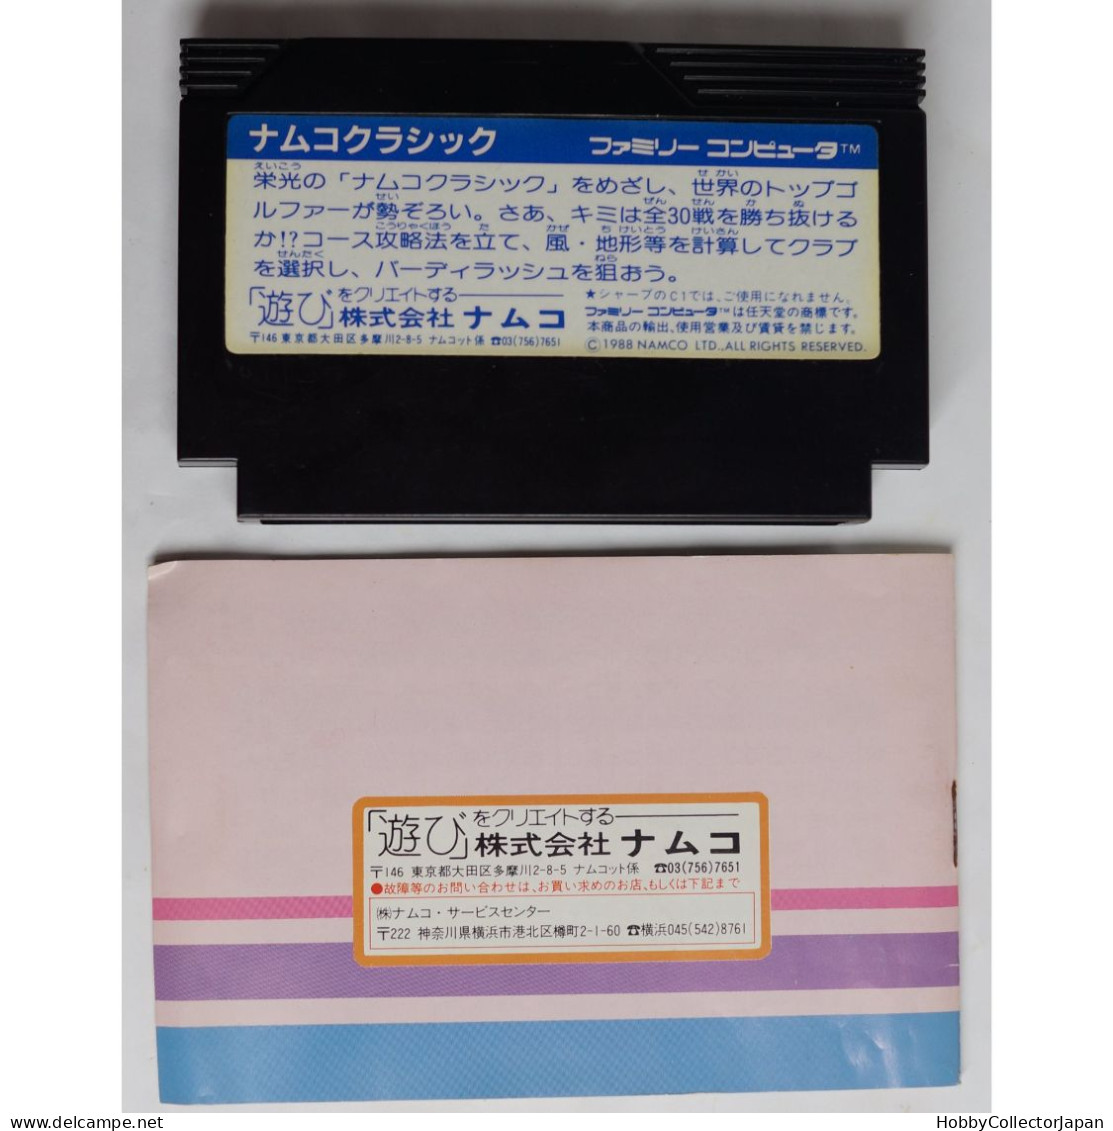 Namco Classic Famicom NAM-NC-5900 4907892000407 - Famicom